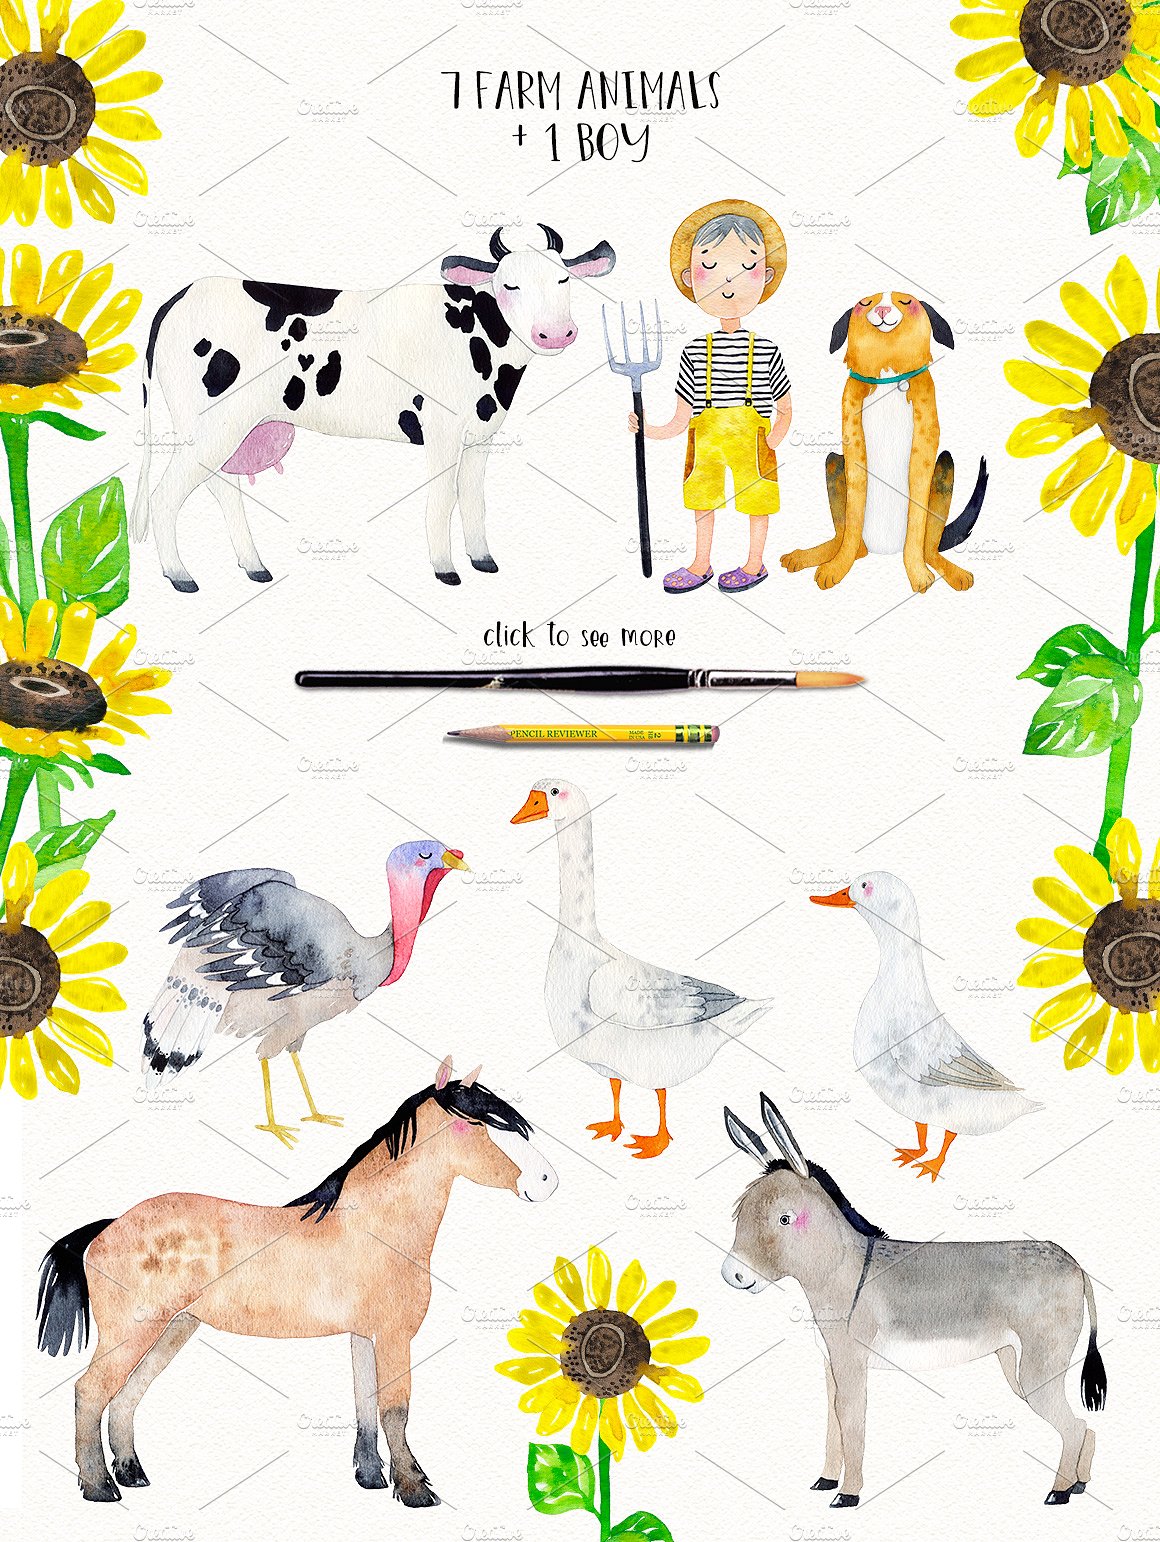 农场动物剪贴画幼儿园儿童插画合集包 FARM ANIMALS